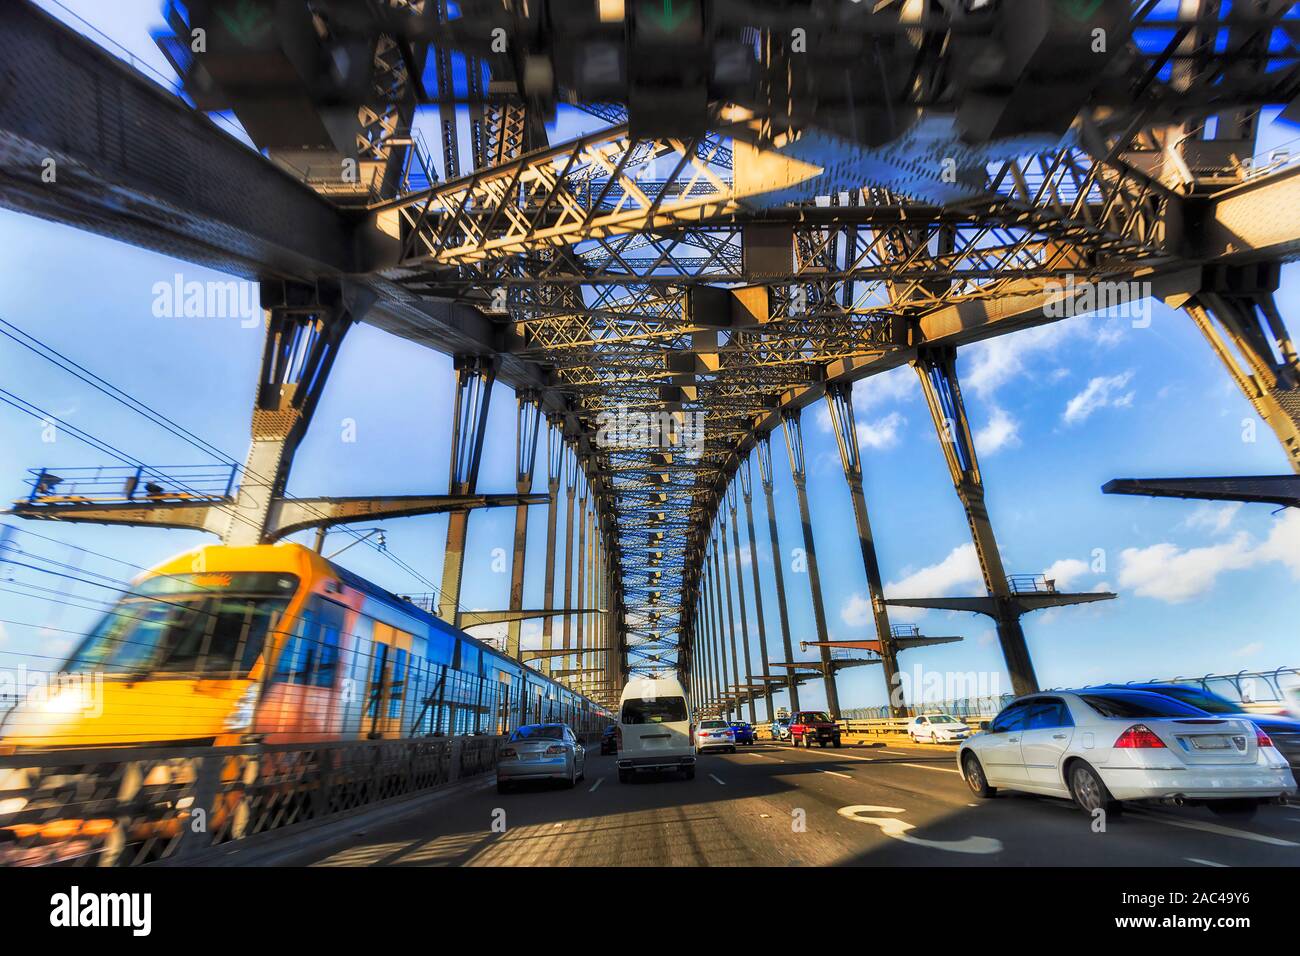 Les véhicules automobiles et ferroviaires du trafic ferroviaire sur Sydney Harbour Bridge en mouvement à l'intérieur de l'arche en acier massif, voies de transports à Sydney. Banque D'Images